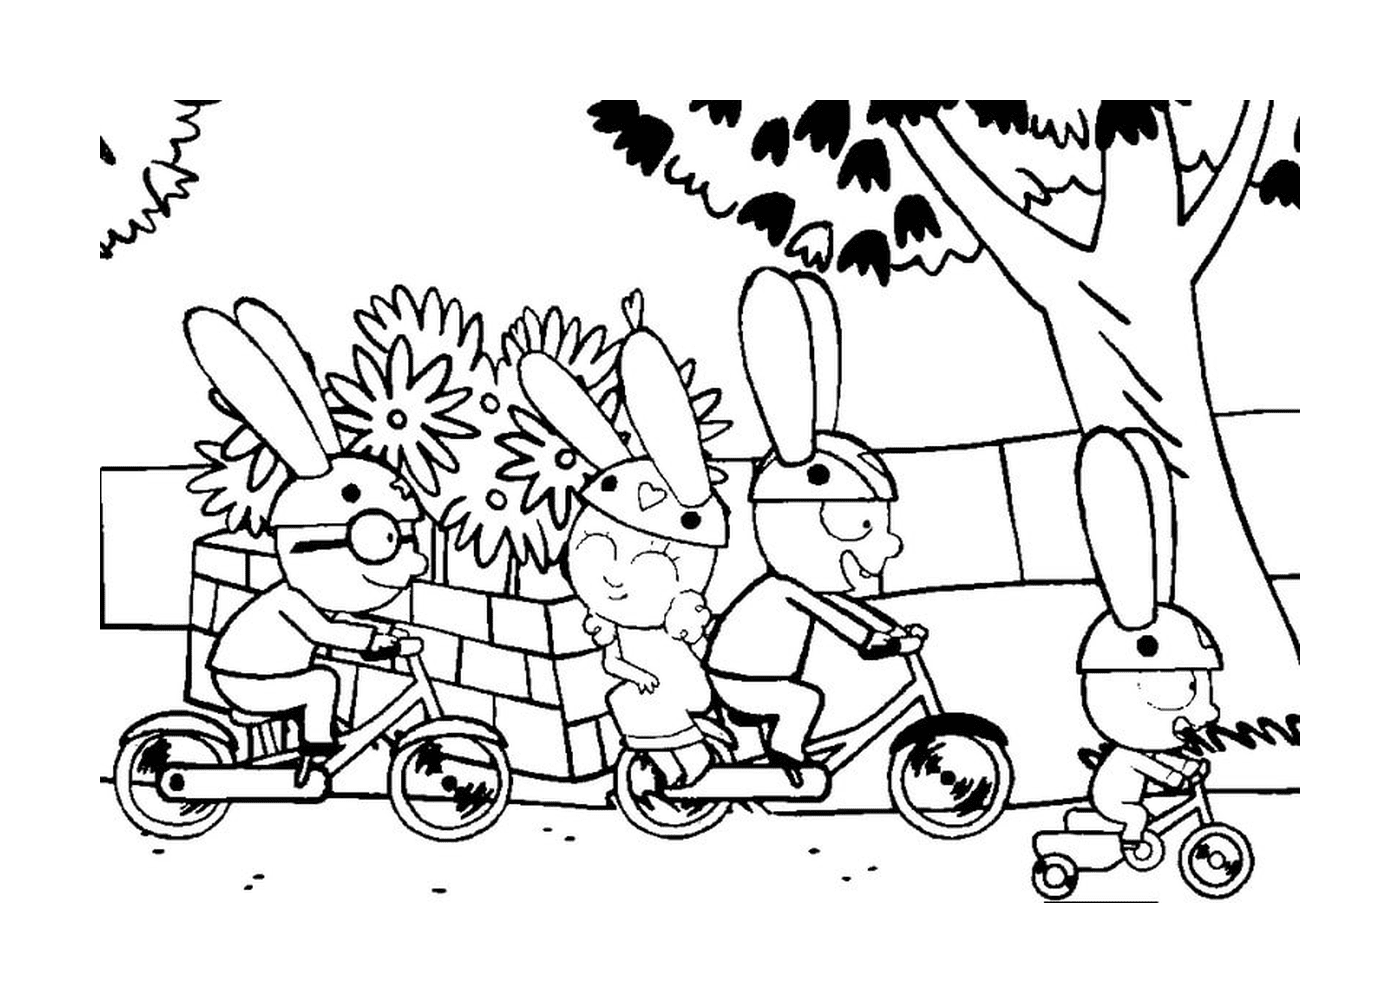  Simon e i suoi amici in bicicletta 